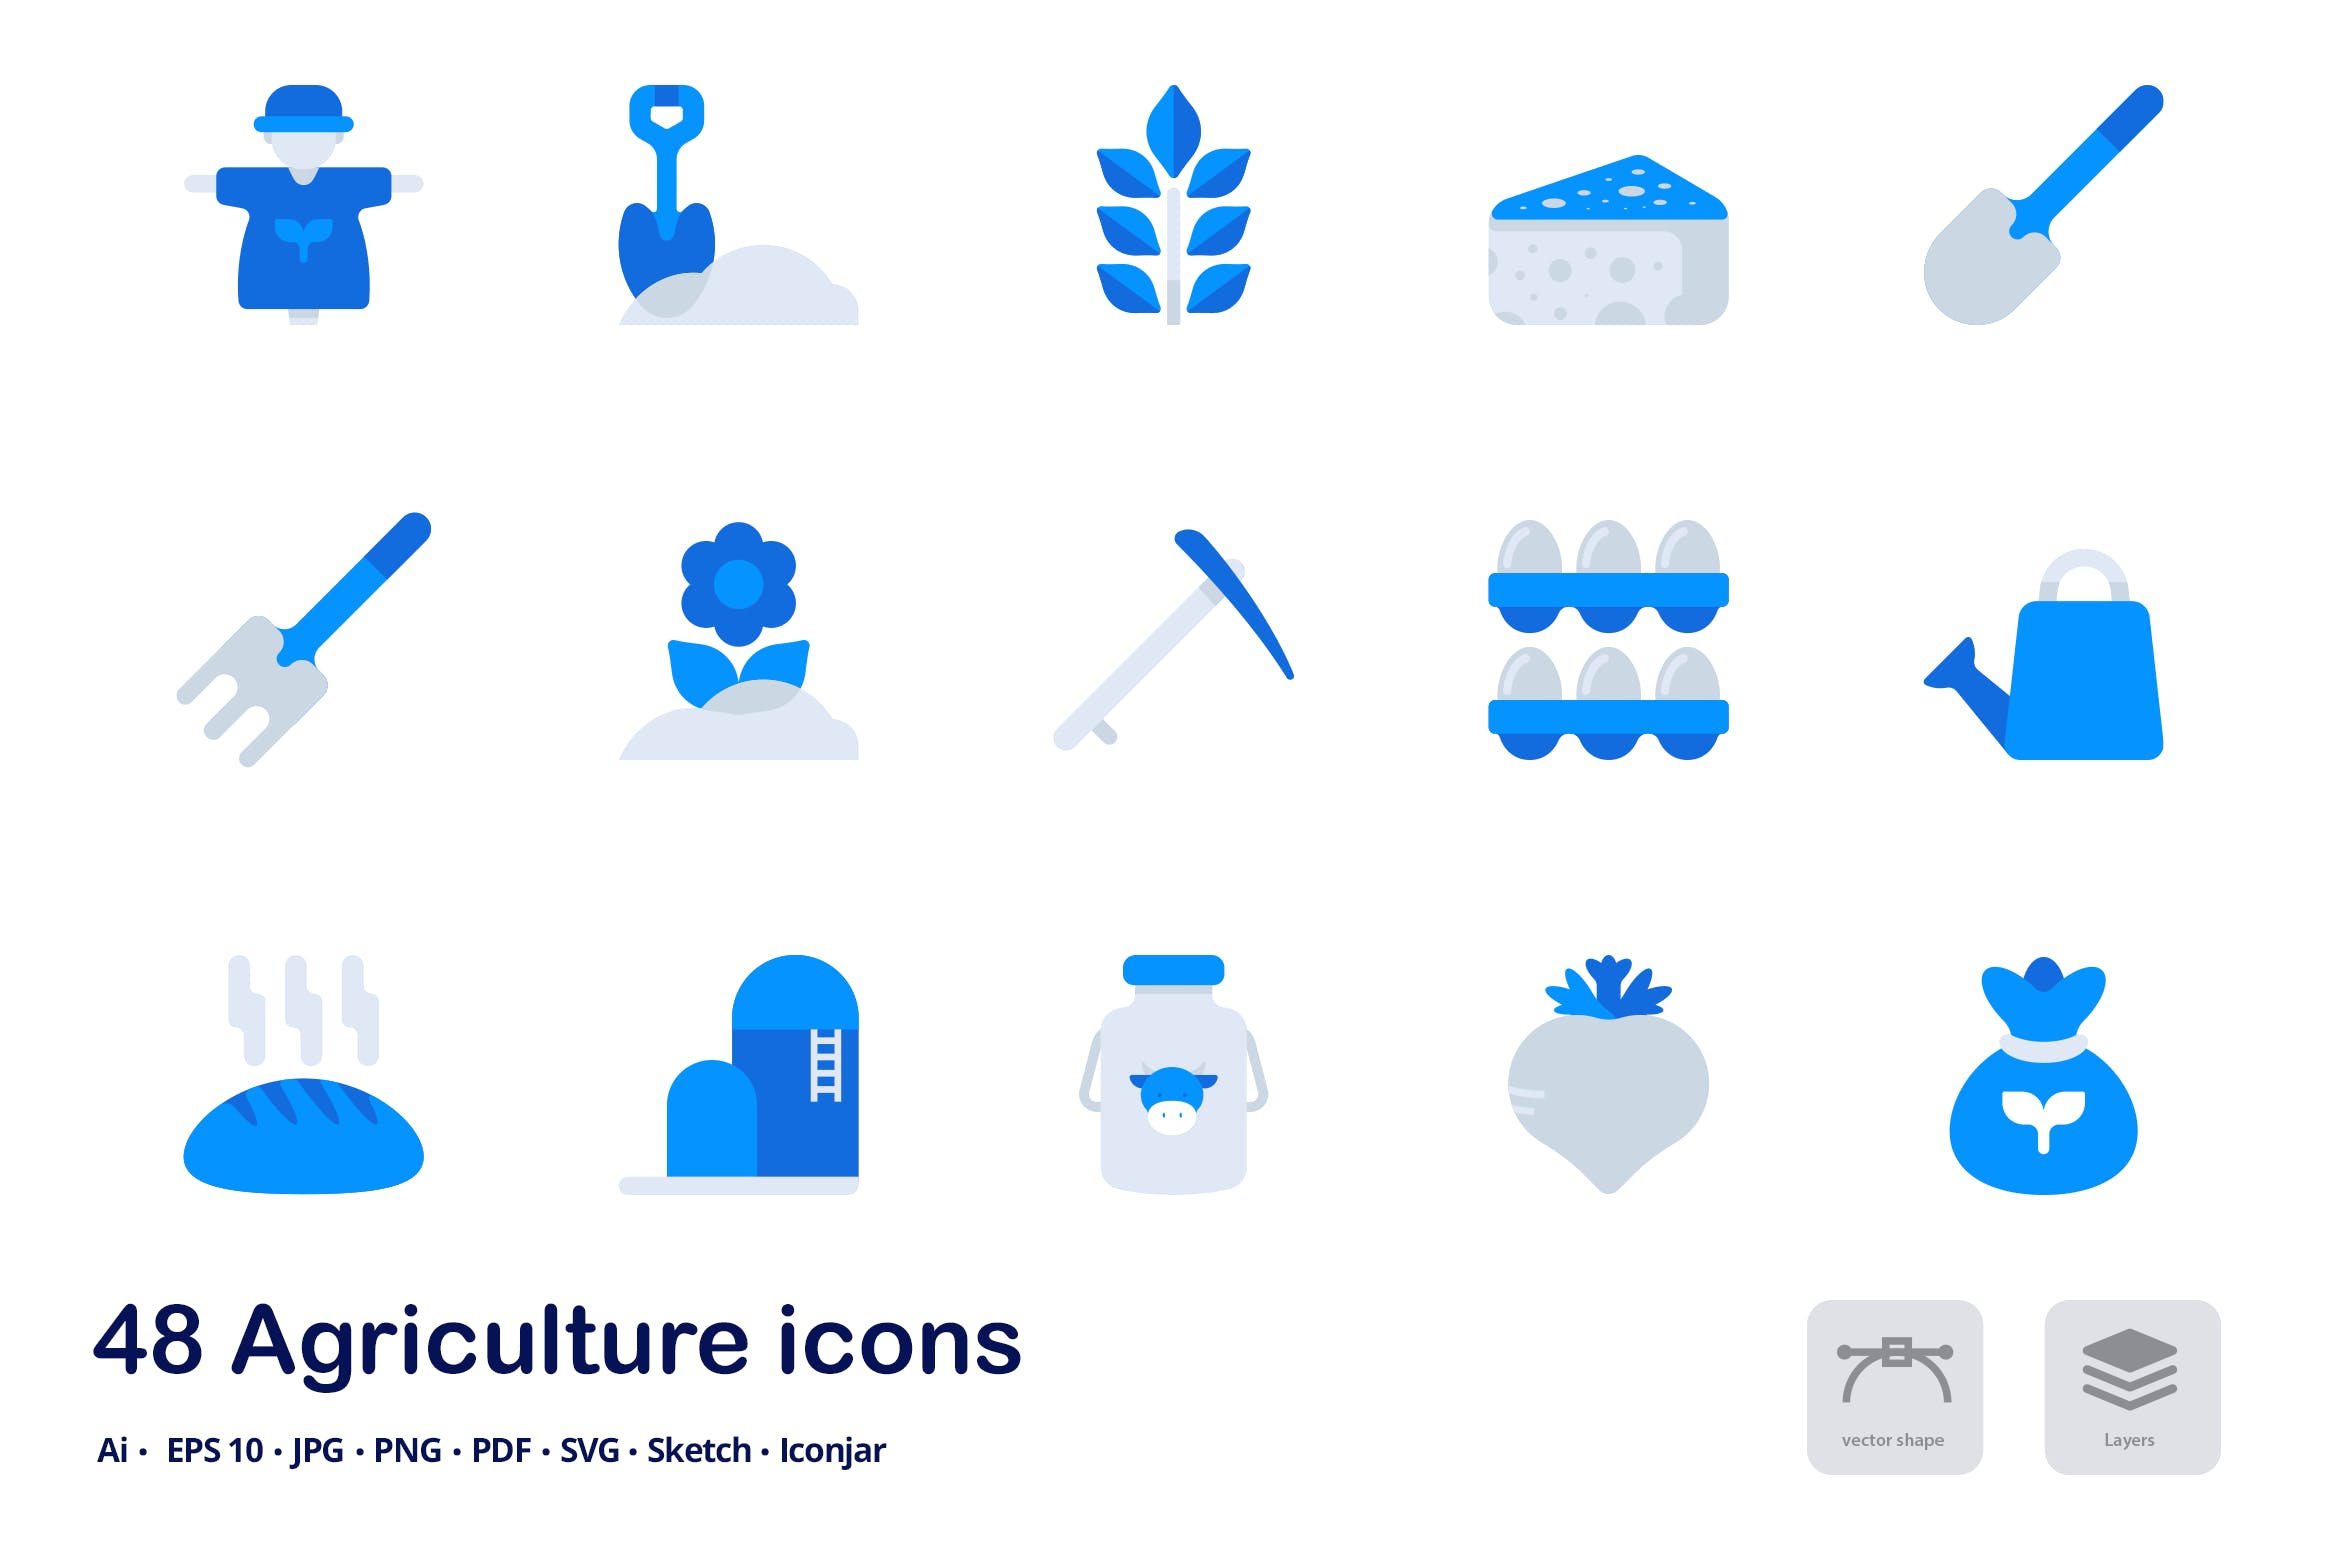 农业主题双色调扁平化矢量图标素材 Agriculture Accent Duo Tone Flat Icons插图